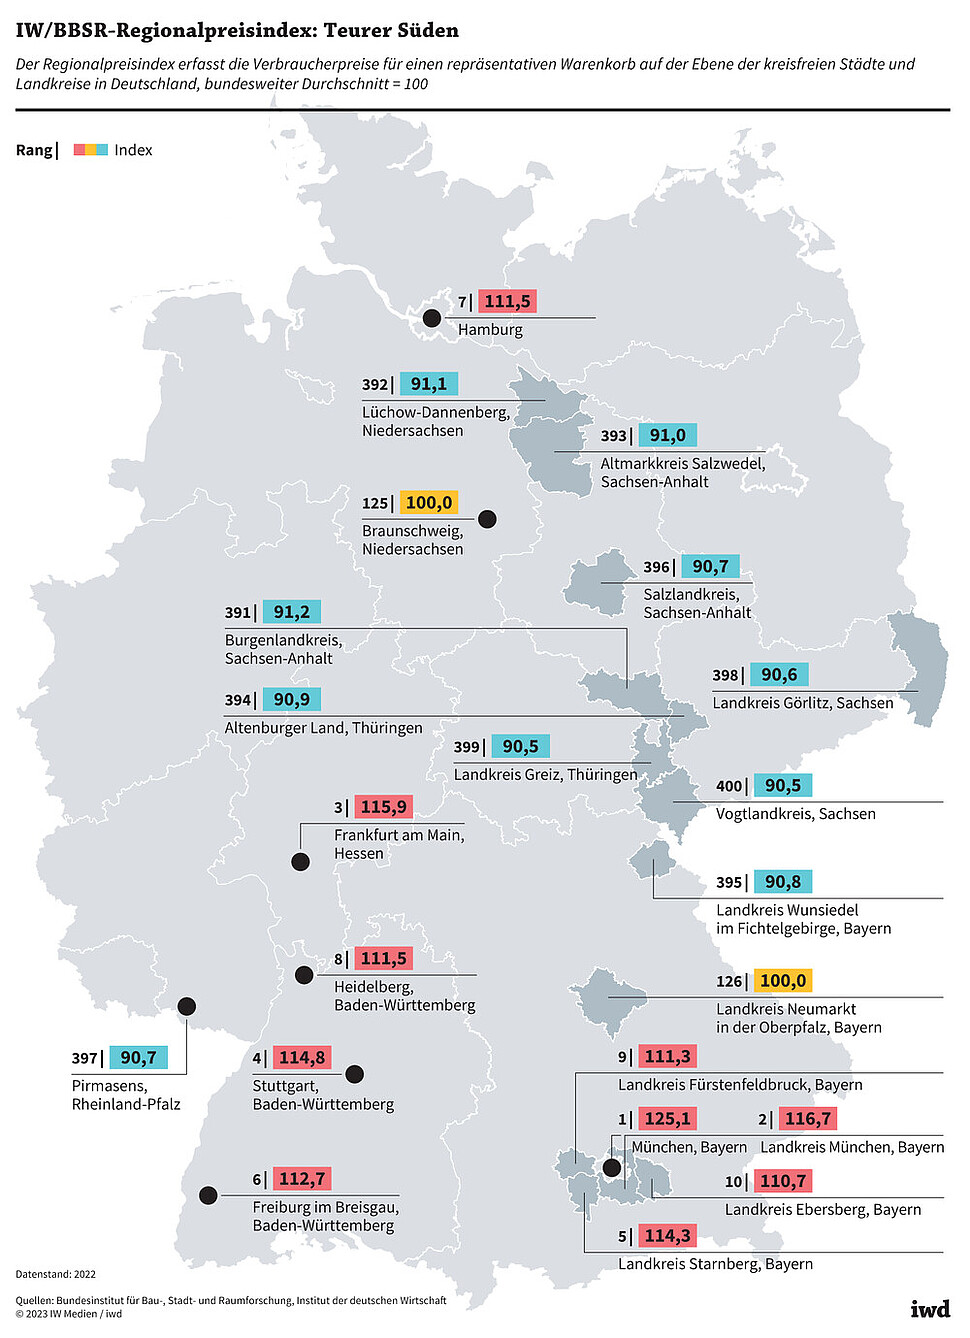 Der Regionalpreisindex erfasst die Verbraucherpreise für einen repräsentativen Warenkorb auf der Ebene der kreisfreien Städte und Landkreise in Deutschland, bundesweiter Durchschnitt = 100